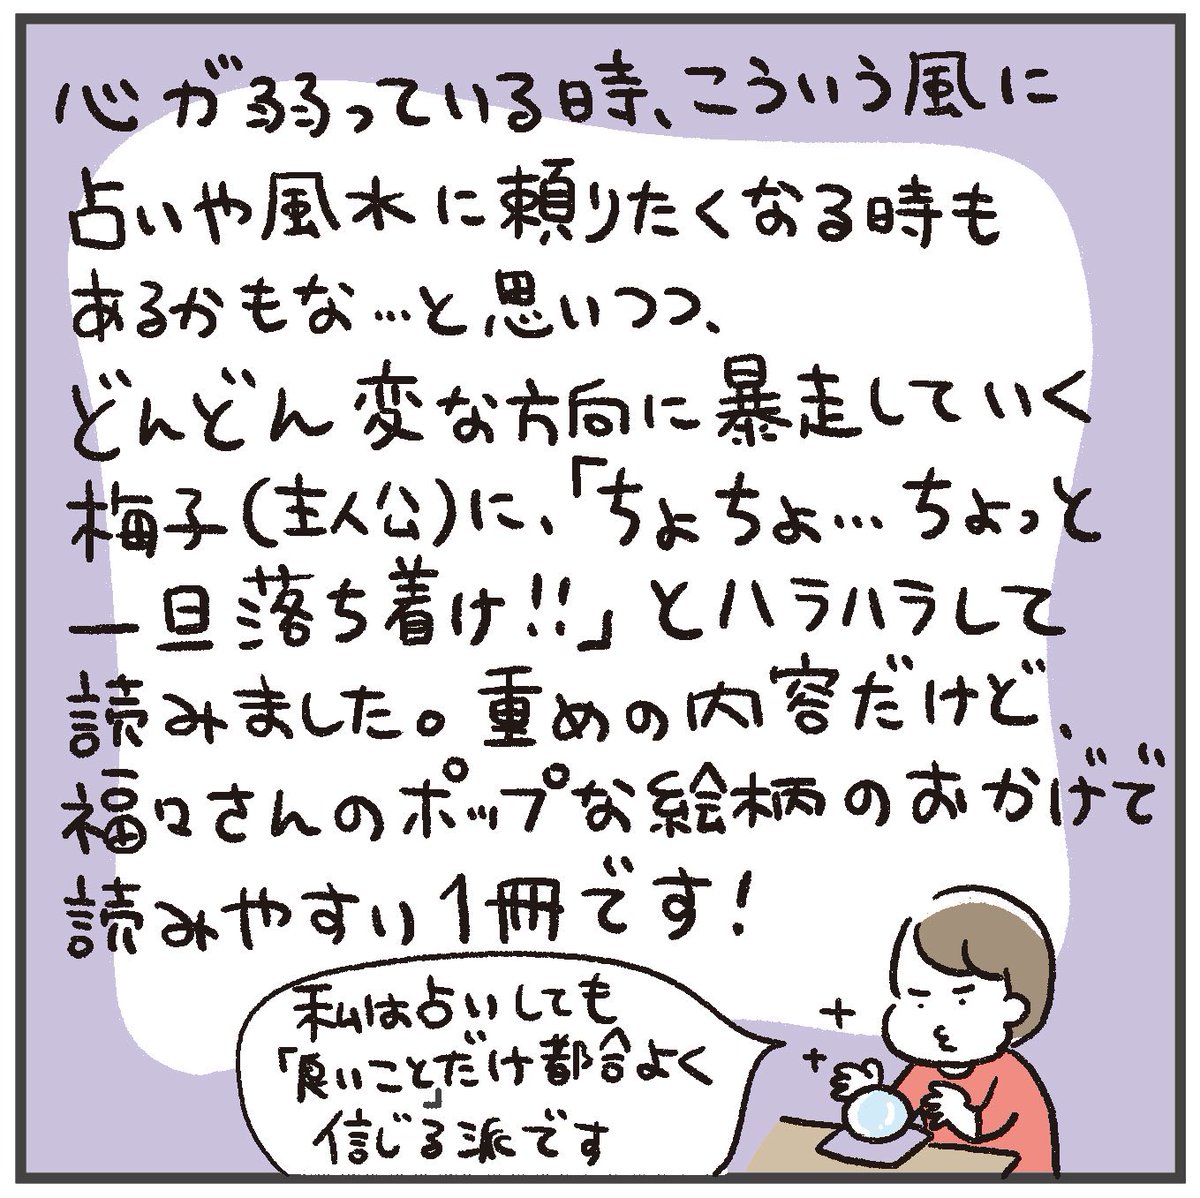 【ブックレビュー】
福々ちえ(@fukufuku_comic)さんの
「占いにすがる私は間違っていますか?」を読みました!

遅くなりましたが発売おめでとうございますー!🥳
https://t.co/91XTXmoVlM 